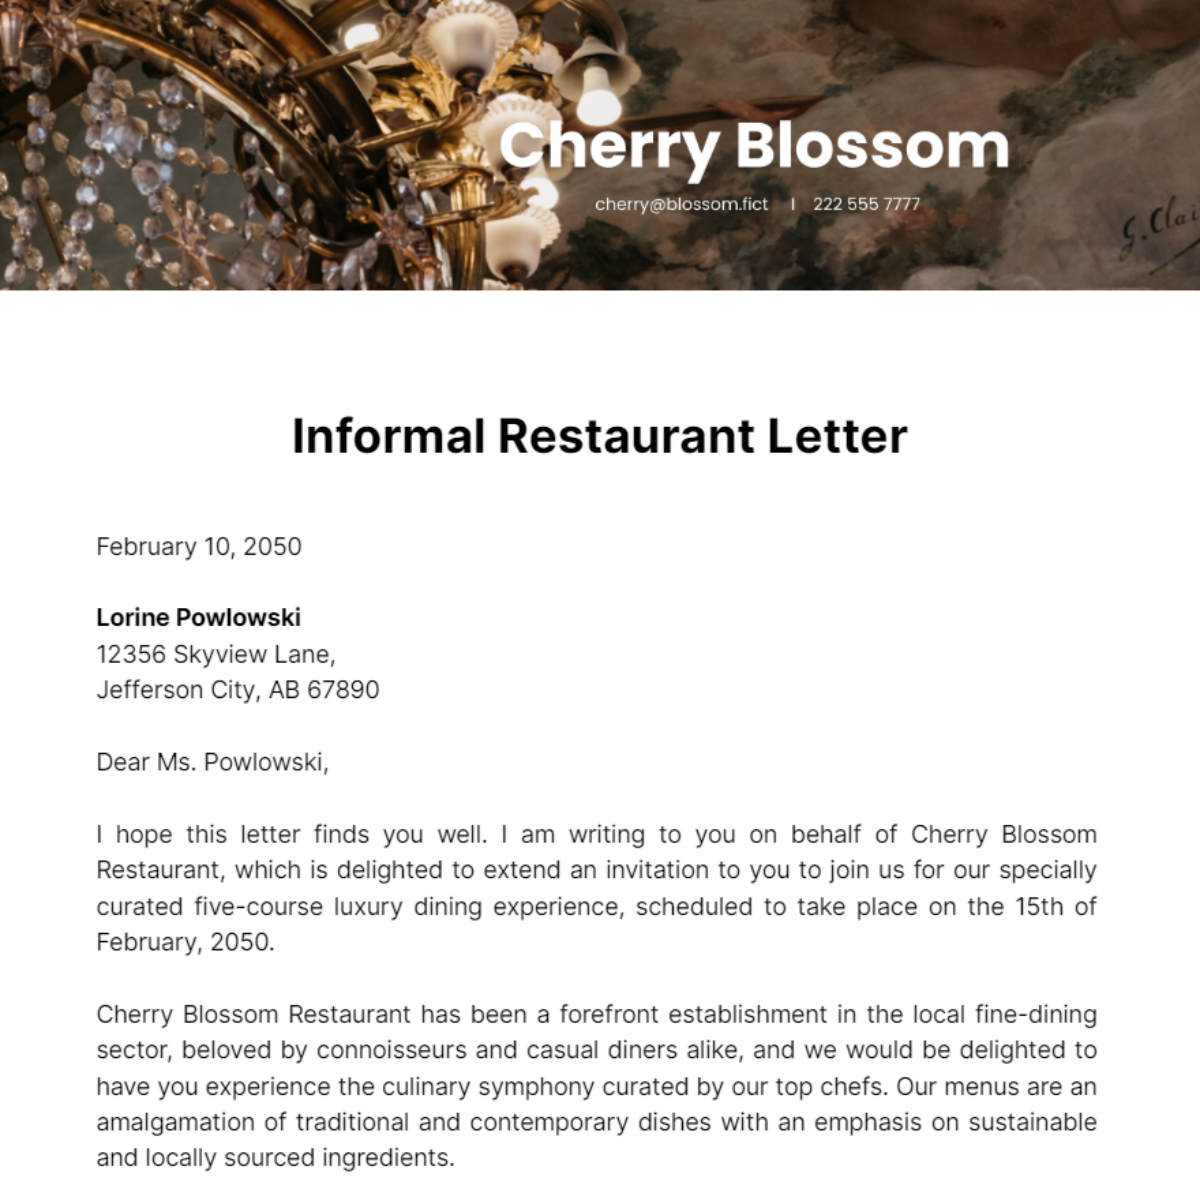 Informal Restaurant Letter Template